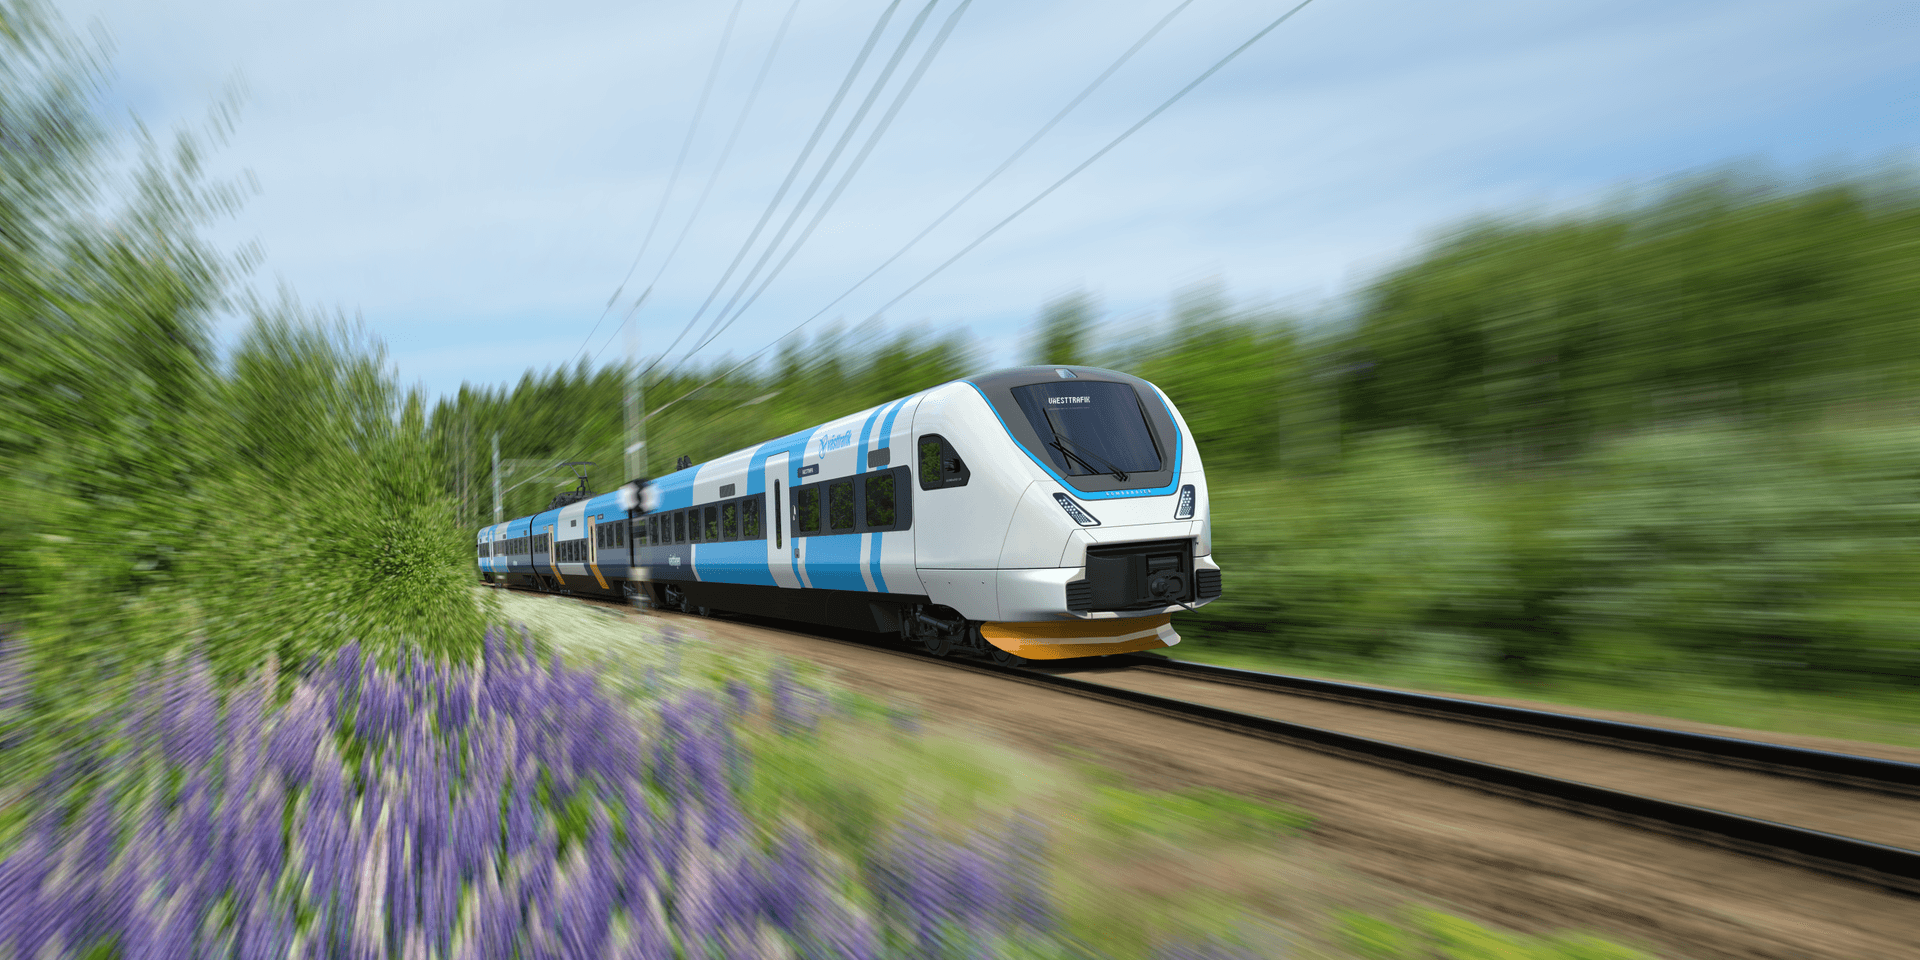 Designskiss av Västtrafiks nya tåg. Tågen blir cirka 80 meter långa och får cirka 270 sittplatser per tåg. 